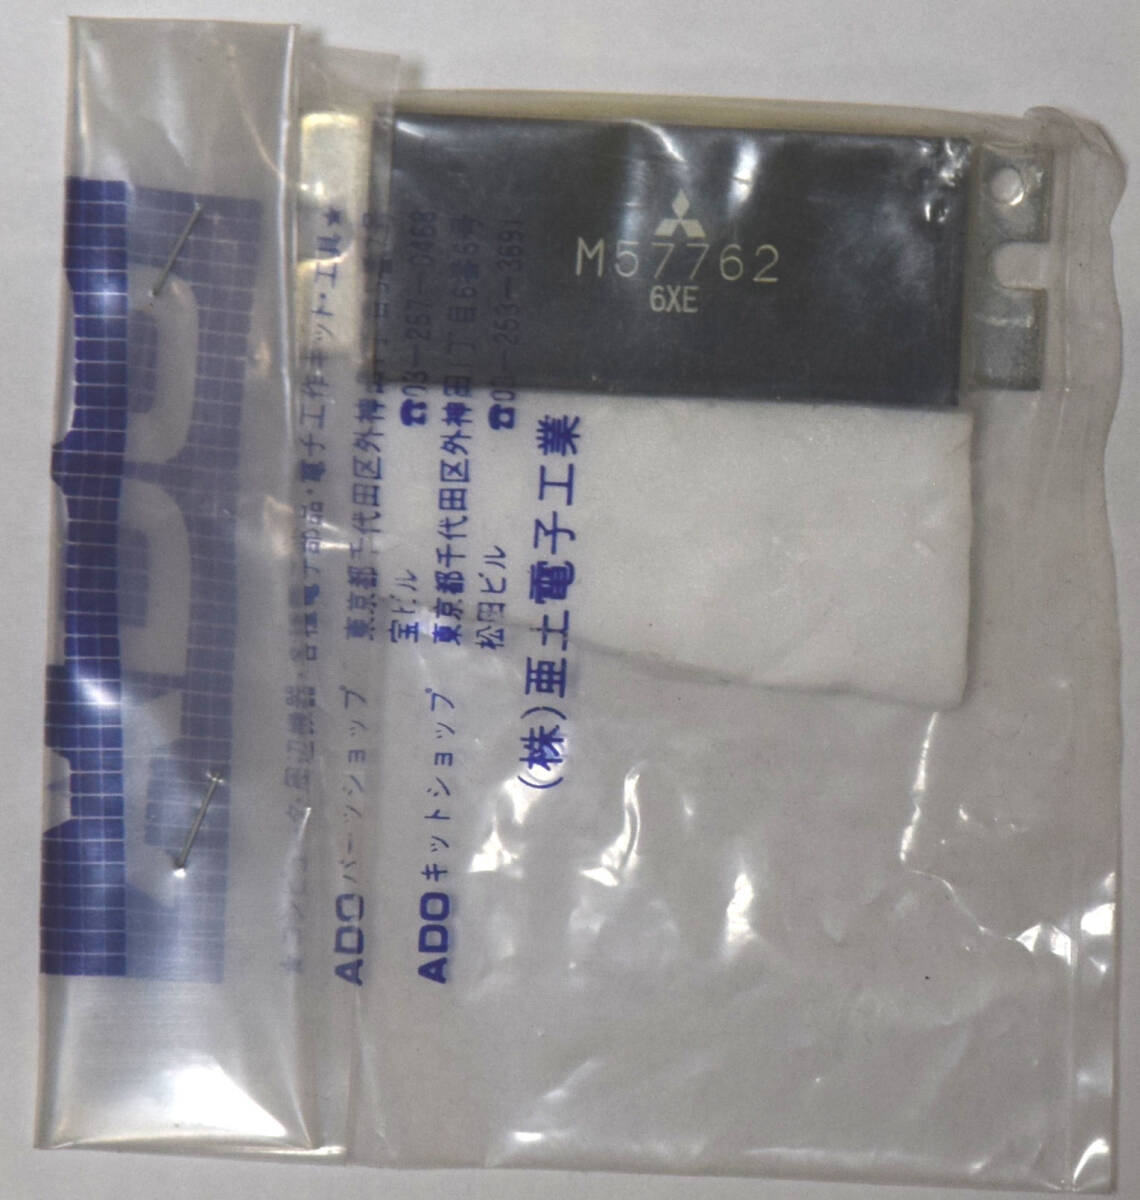  Mitsubishi Electric M57762 1200M Hz диапазон SSB для 10W энергия модуль не использовался работоспособность не проверялась 